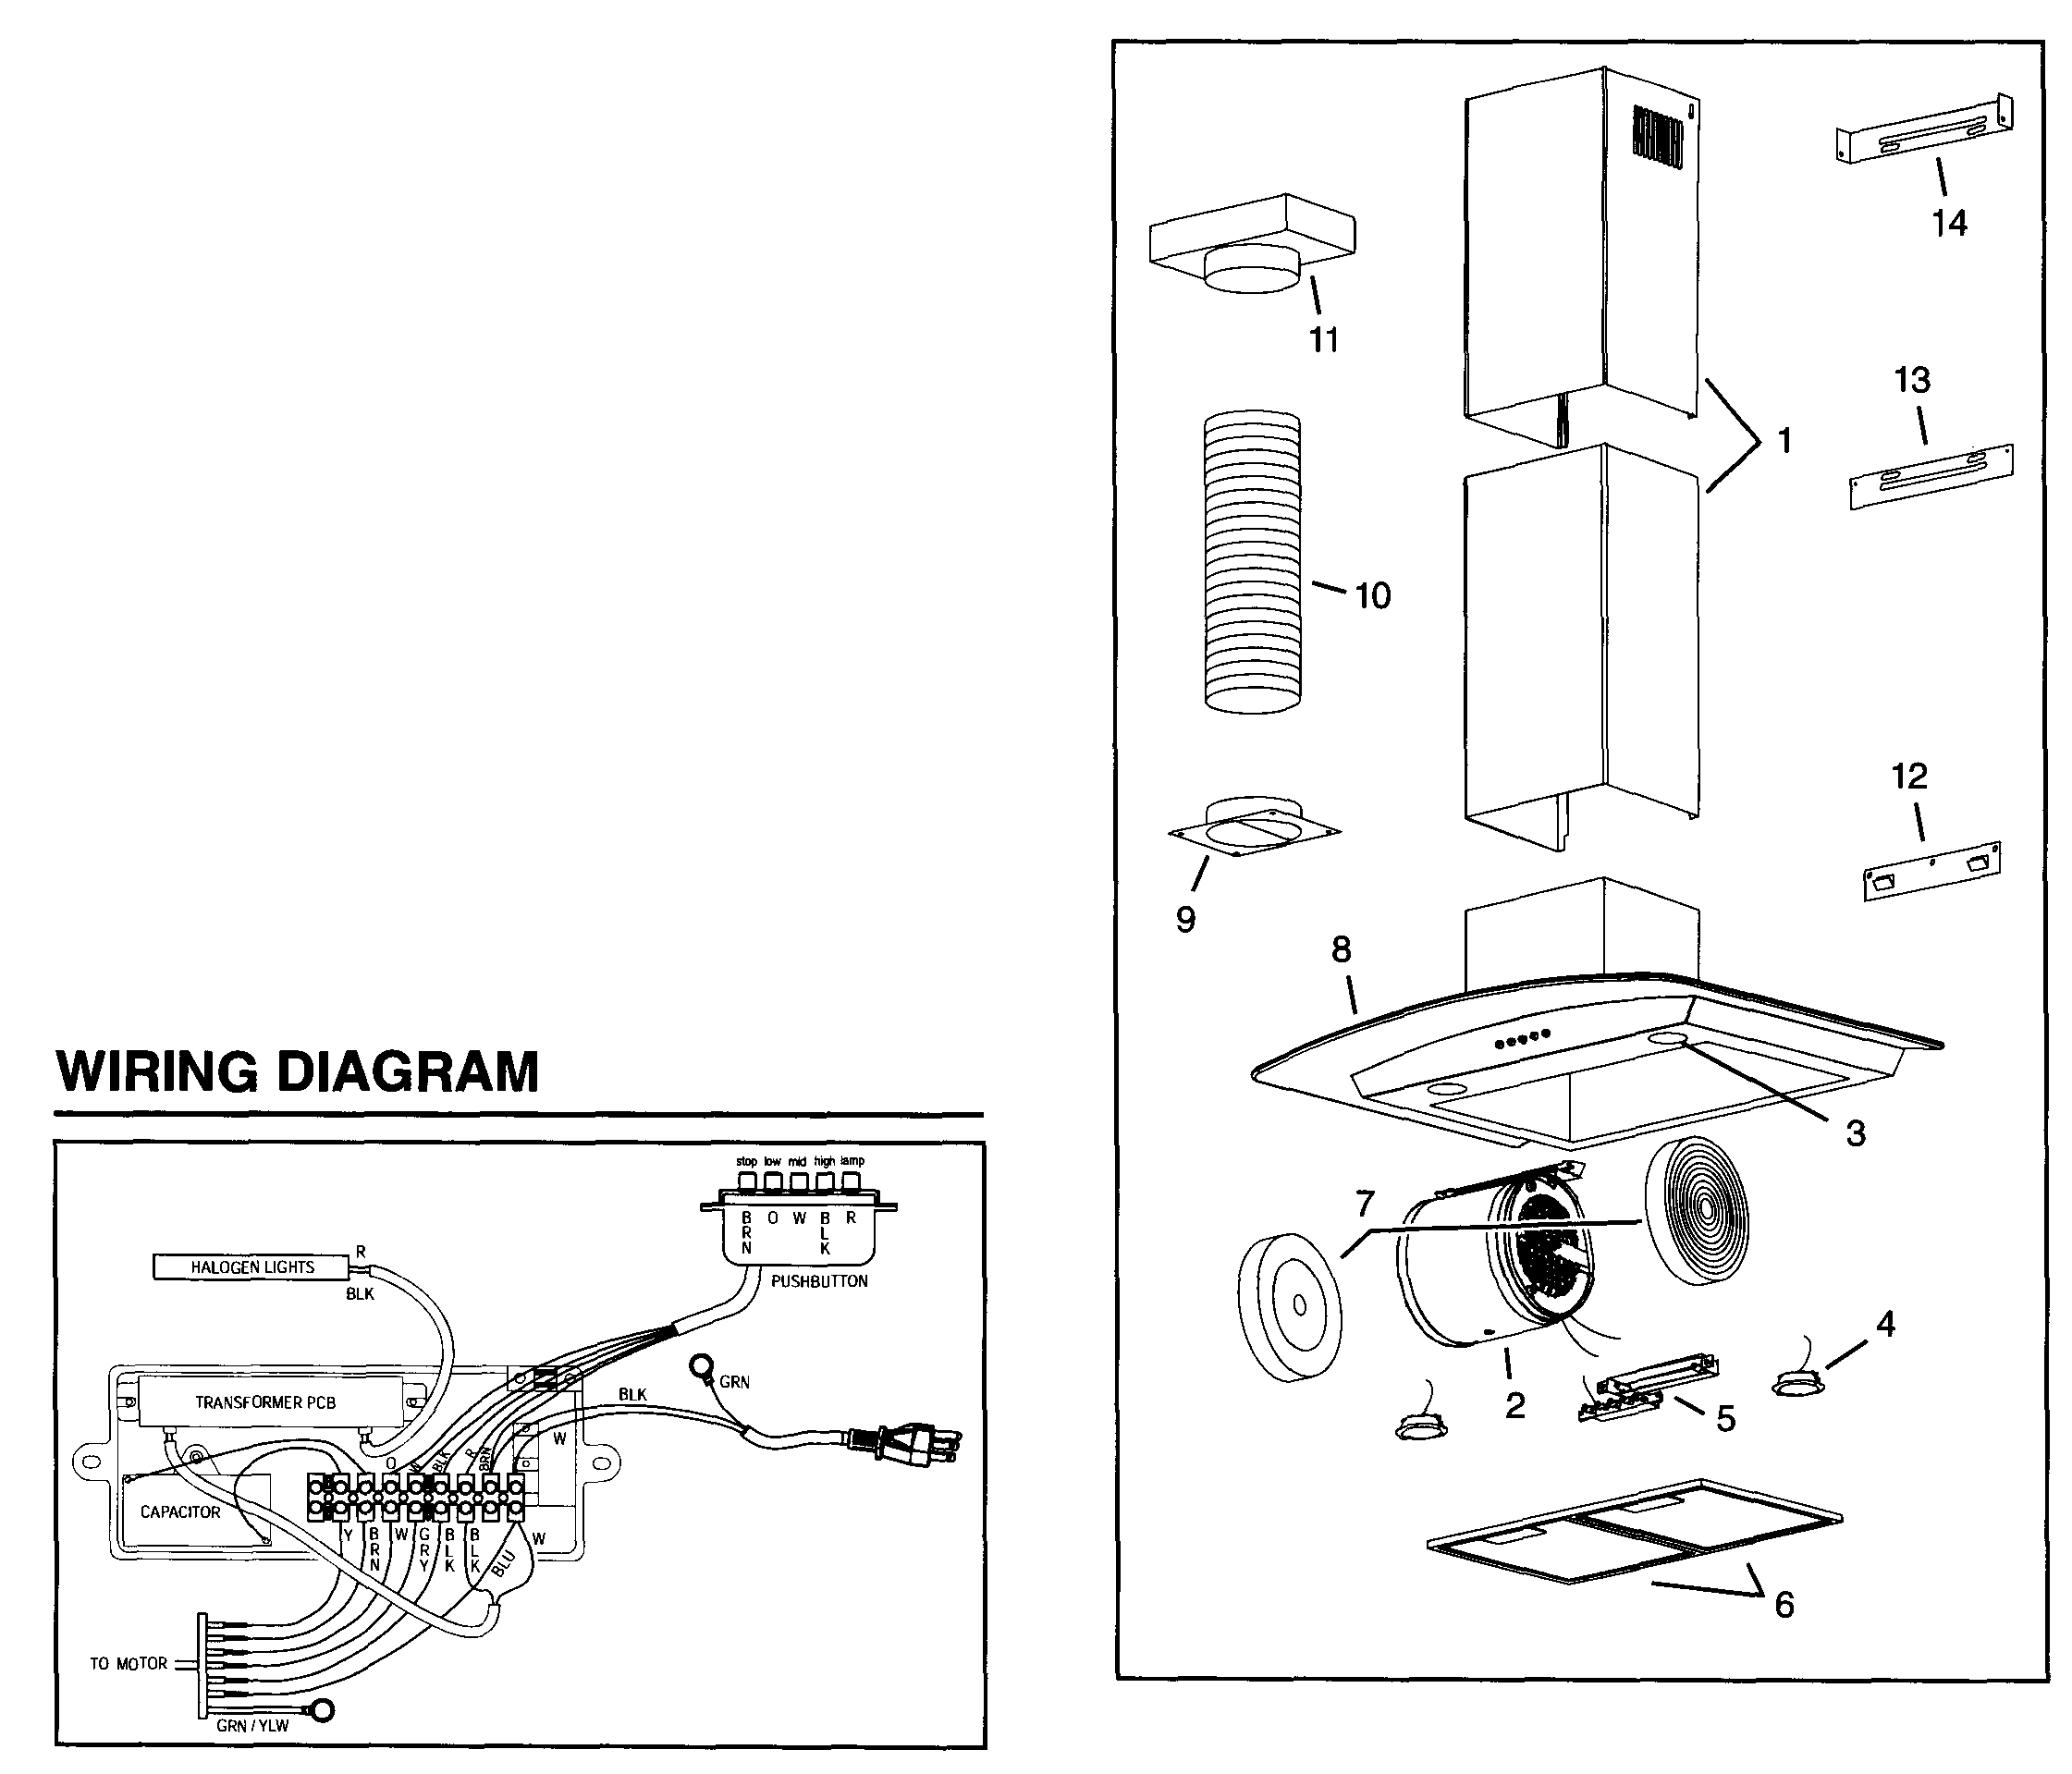 nutone exhaust fan model 9965 wiring diagram